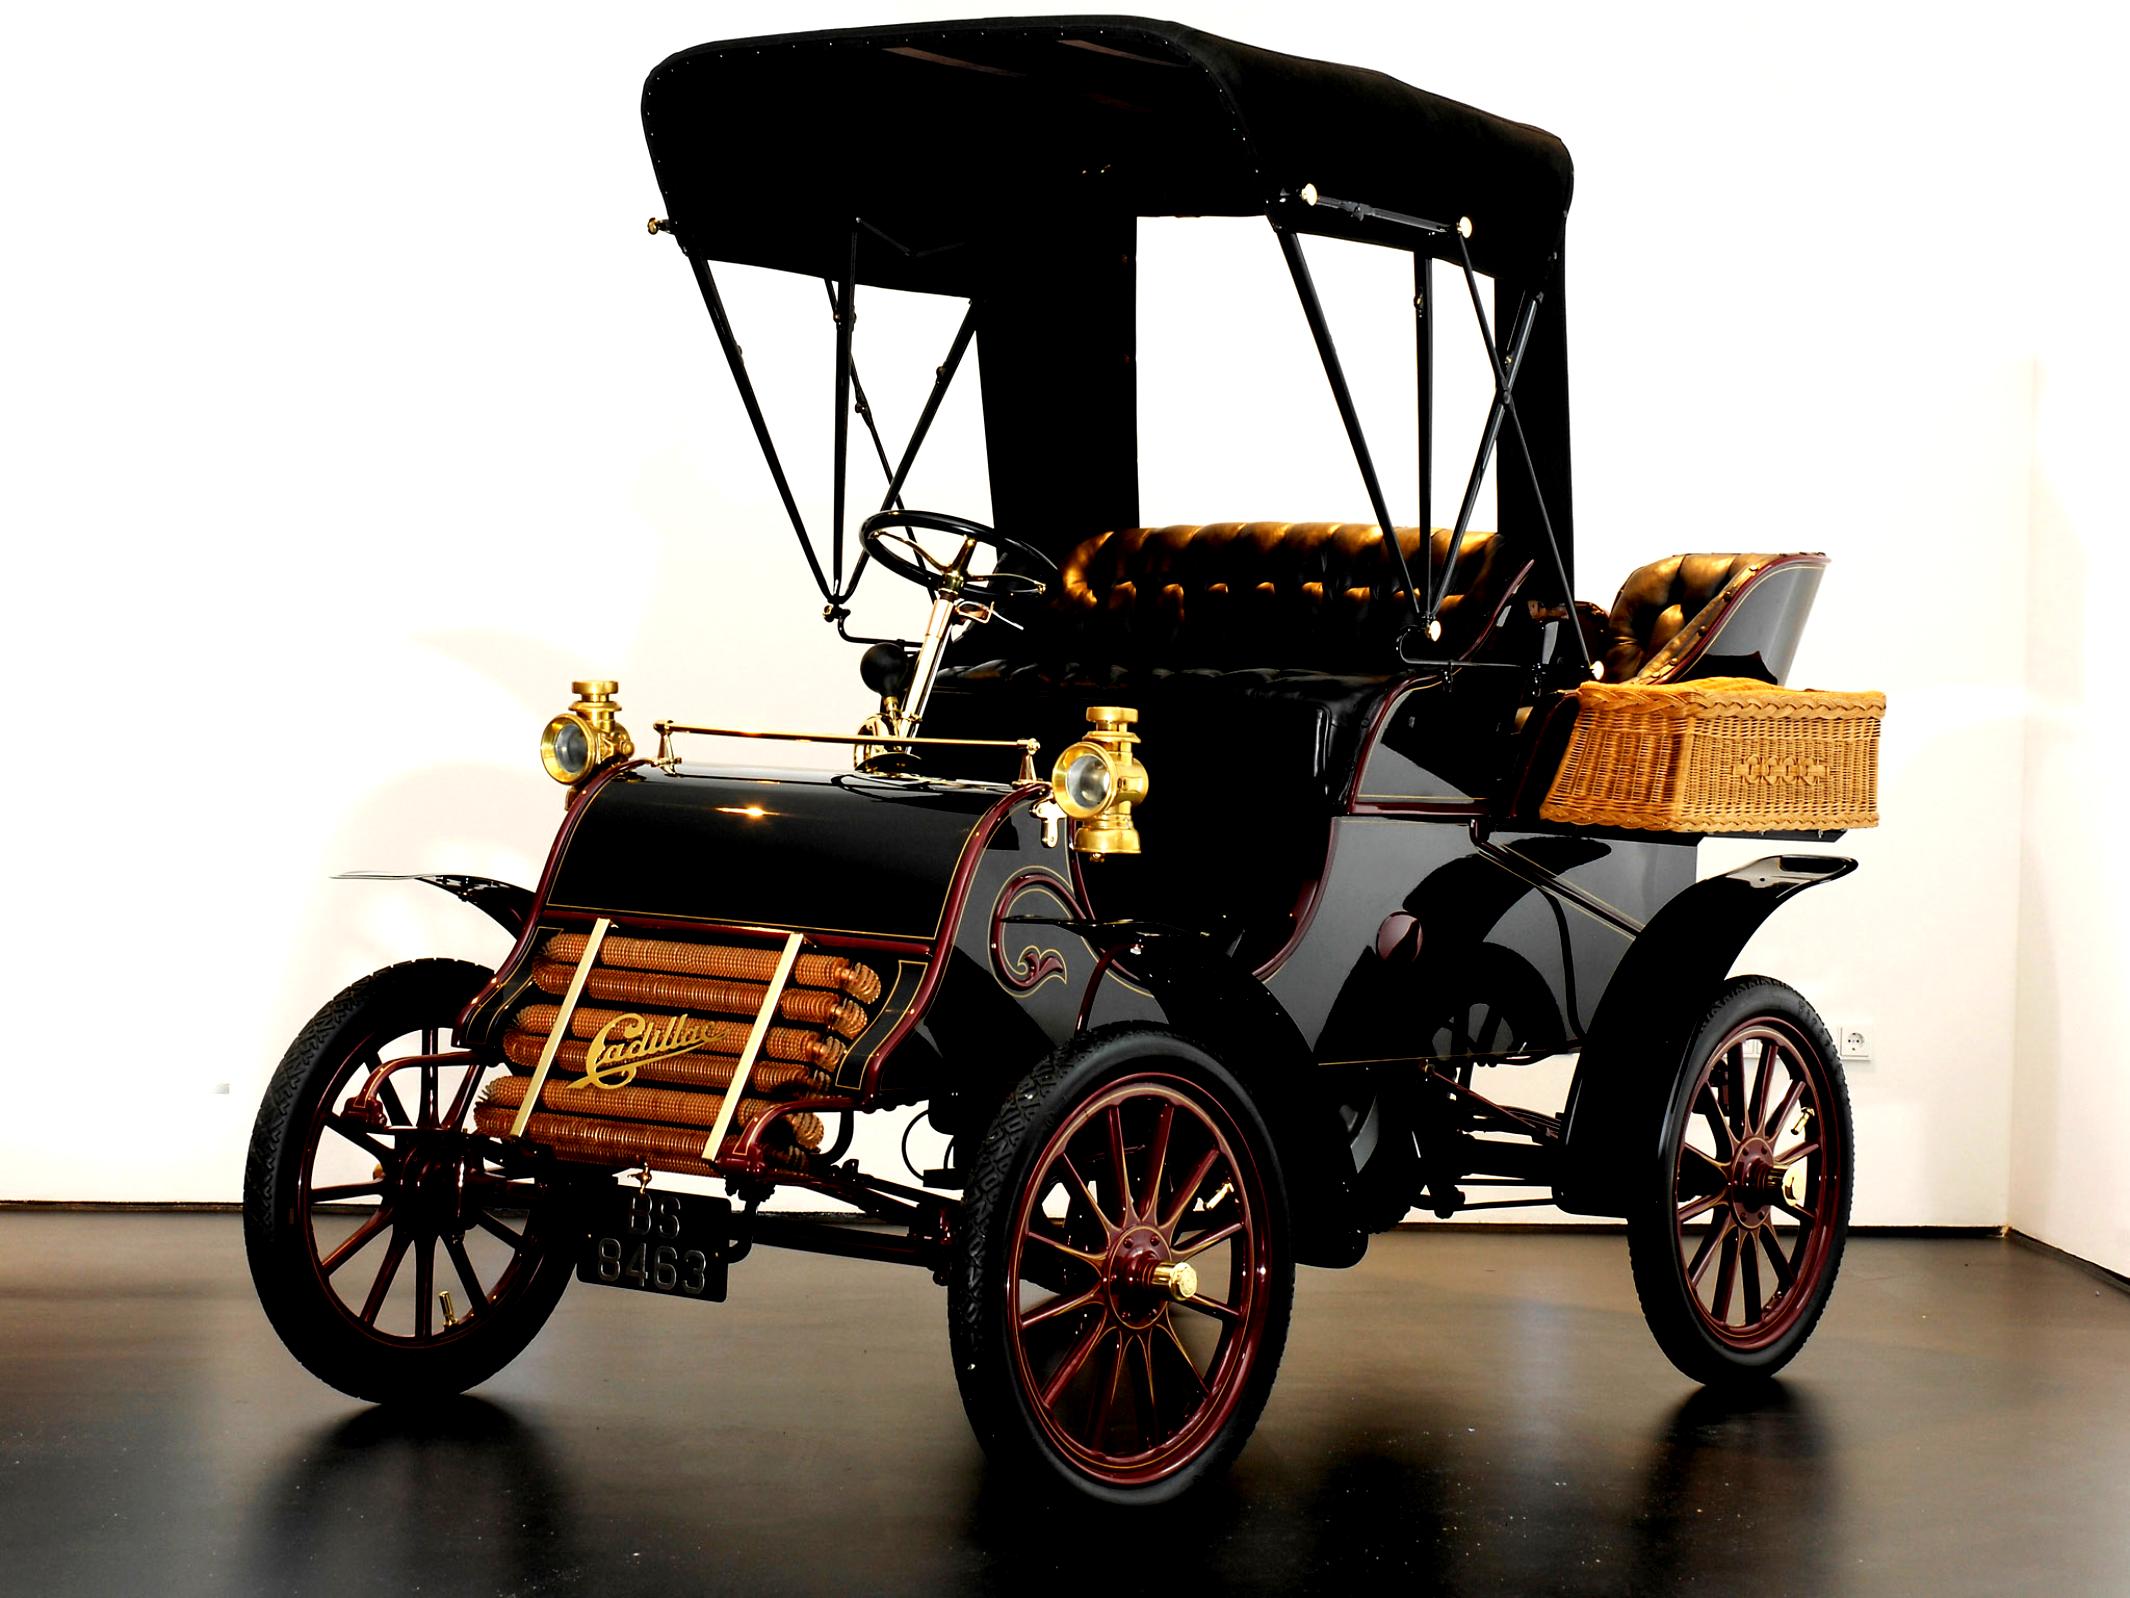 Первый автомобиль в истории. Cadillac model a Runabout (1902). 17 Октября 1902 — в Детройте выпущен первый автомобиль марки «Кадиллак».. Cadillac 1903. 1903 Cadillac model a.